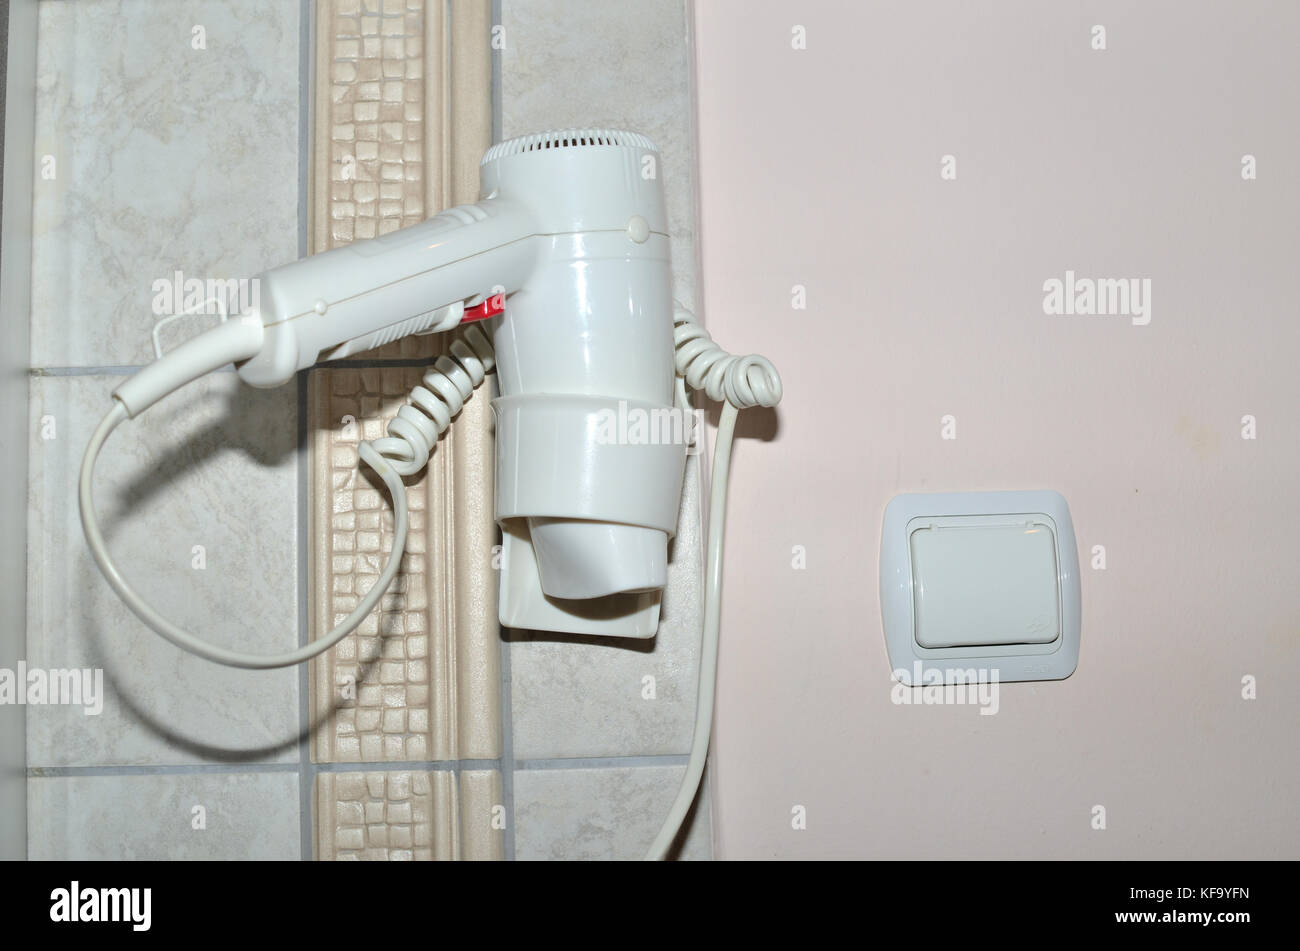 Weißes Haar Trockner in die Halterung ein, an einer Wand in einem Badezimmer angebracht Stockfoto